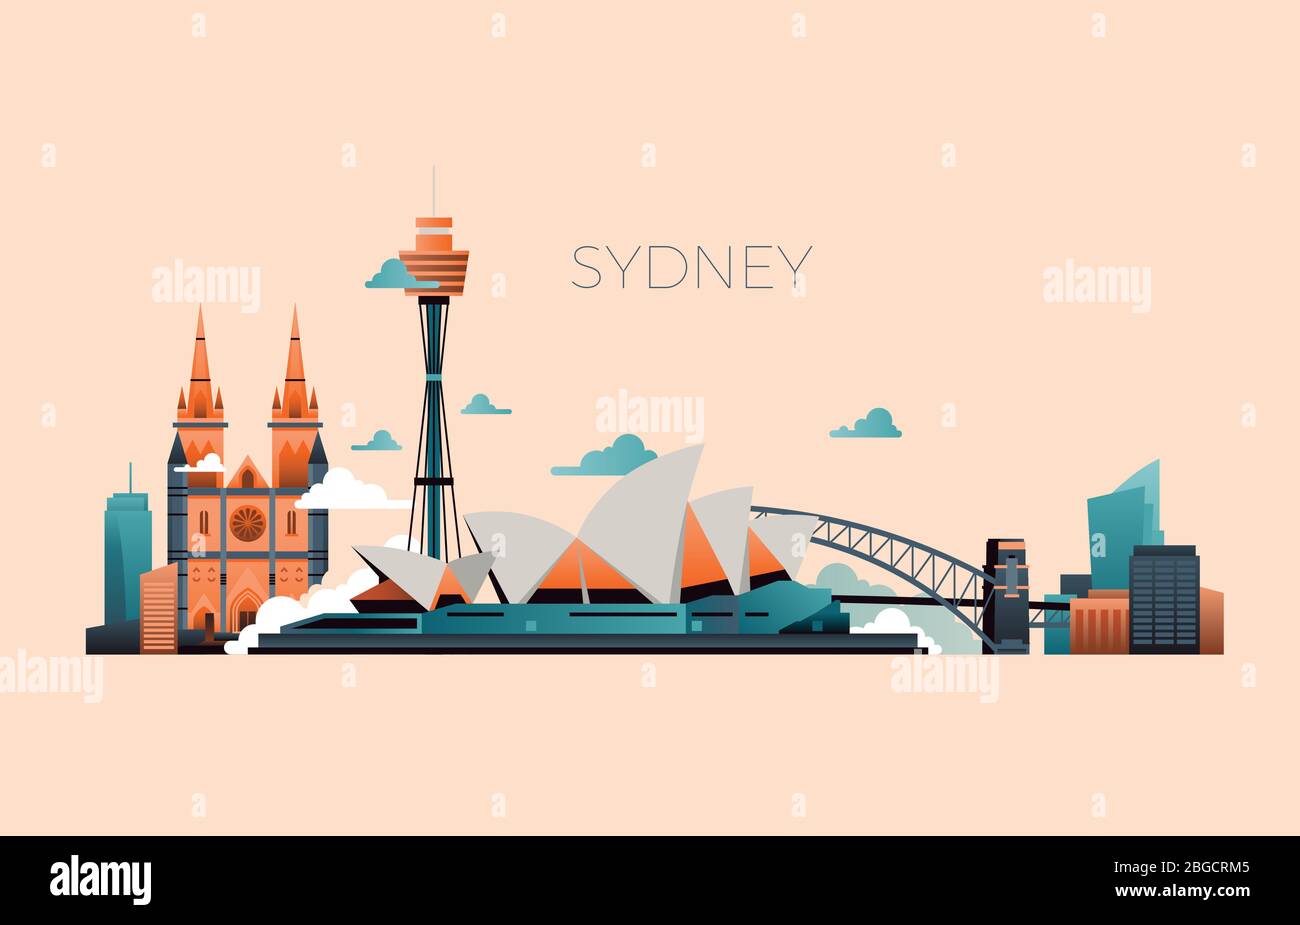 Australien Reise Wahrzeichen Vektorlandschaft mit Sydney Oper und berühmten Gebäuden. Sydney Stadtarchitektur, Wahrzeichen und Panorama Gebäude Illustration Stock Vektor